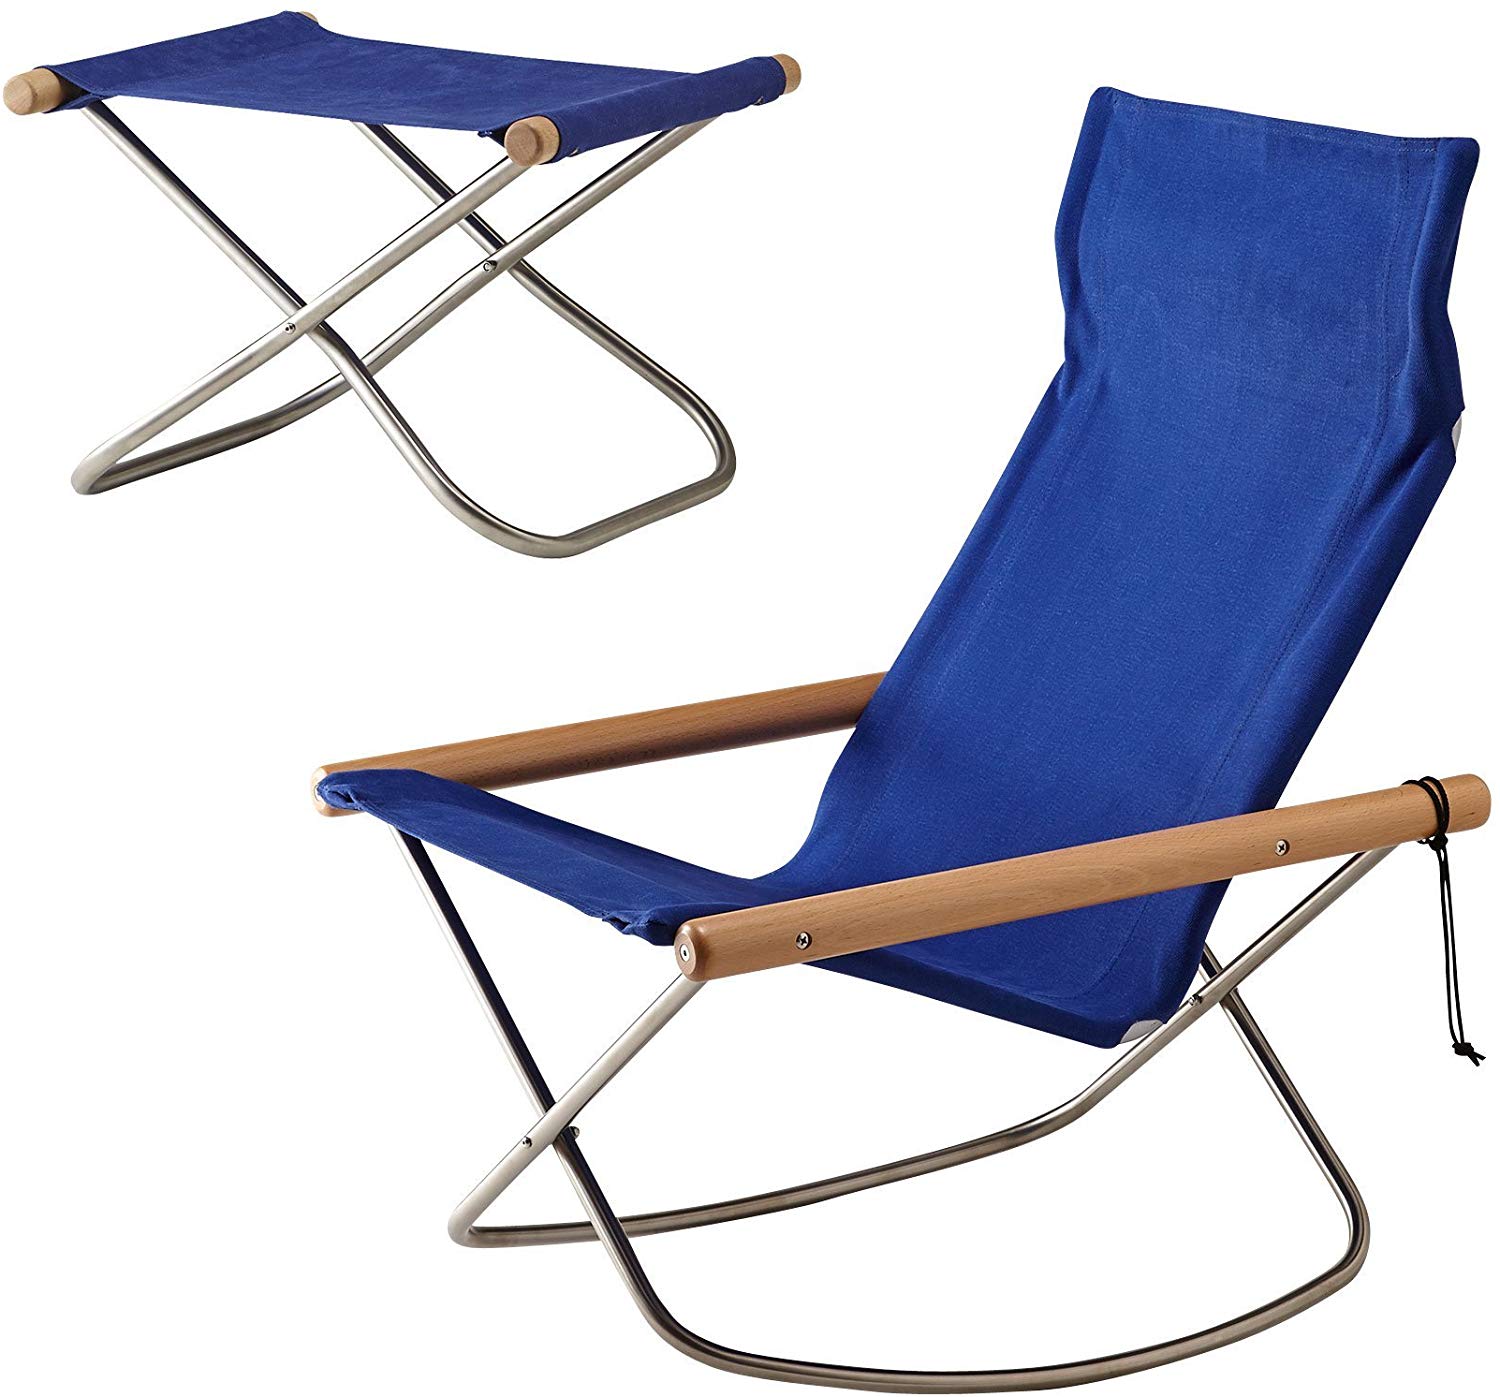 Ny chair X / ニーチェアエックス 世界に誇る日本の椅子 「Nychair X」は、デザイナー新居 猛によって1970年に発売して以来、これまで世界各国で40年以上に渡り、販売されている椅子の名作です。 社会環境やライフスタイルが刻々と変化していく中、シーンや雰囲気を選ばず、座り心地の良いデザインは、日本の住環境にふさわしく生活者のくらしに寄り添っています。 「カラー」 座面：5色（ブルー、レンガ、ホワイト、キャメル、グレー） 肘掛け（オットマンの場合は木部）：2色（ナチュラル、ダークブラウン） ＜サイズ＞ [ニーチェアエックスナ ロッキング] 約幅61×奥行76.5×高さ86cm 座面の高さ35cm 折りたたみ時：約幅15×奥行76.5×高さ116cm [ニーチェアエックス オットマン ] 約幅50×奥行42×高さ95cm 座面の高さ33cm 折りたたみ時：約幅8.5×奥行42×高さ57.5cm ＜構造部材＞ シート：綿 座面部（両側芯材）：金属（鋼） 肘かけ：天然木（ブナ） 脚部：金属（ステンレス鋼、ヘアライン仕上げ） ＜表面加工＞ 座背部（両側芯材）：アクリル樹脂塗装 肘かけ：ウレタン樹脂塗装 ＜原産国＞ 日本 ※組立式 発送：宅配便のみ ※他の色ニーチェアエックス ロッキング オットマン セットです。 キャメルナチュラル ブルーナチュラル ブルーダークブラウン レンガナチュラル レンガダークブラウン グレーナチュラル グレーダークブラウン ホワイトチュラル ホワイトダークブラウン ※他の色ニーチェアエックスオットマン セットです。 キャメルナチュラル キャメルダークブラウン ブルーナチュラル ブルーダークブラウン レンガナチュラル レンガダークブラウン グレーナチュラル グレーダークブラウン ホワイトチュラル ホワイトクブラウン ※他の色ニーチェアエックスオットマンです。 ホワイトチュラル ホワイトクブラウン キャメルナチュラル キャメルクブラウン ブルーナチュラル ブルーダークブラウン レンガナチュラル レンガダークブラウン グレーナチュラル グレーダークブラウン 注意事項 ※モニターにより色が実物とは異なる場合が御座います。 ※メール便では代引きや日時指定はできません。 ※予約商品は、商品が入荷次第、発送いたします。 通常発送商品を同時にご注文いただいた場合、 基本的には、予約商品と一緒に送らせていただきます。 ※ご注文の際は色や数量などお間違えのないように再度ご確認くださいませ。ご注文確定後の色や数量、送付先の変更などはお受けできませんのでご了承下さい。 ※多店舗運営のため、ご注文のタイミングによってはホームページ上で在庫がある商品も欠品になる場合がございます。ご了承下さい。 ※送料無料のご注文の場合は、配送センターの任意で、配送方法や配送業者が変更になる場合がございます。ご了承ください。 ※送料無料の商品と送料がかかる商品を同時に購入された場合、同梱しても送料は無料になりませんのでご注意下さい。 ※当店では環境保護と資源削減のため段ボール及び梱包材の再利用を行っております。 All THINGS HAPPPY - by Iworkpro（SmartZakka）Ny chair X / ニーチェアエックス 世界に誇る日本の椅子 「Nychair X」は、デザイナー新居 猛によって1970年に発売して以来、これまで世界各国で40年以上に渡り、販売されている椅子の名作です。 社会環境やライフスタイルが刻々と変化していく中、シーンや雰囲気を選ばず、座り心地の良いデザインは、日本の住環境にふさわしく生活者のくらしに寄り添っています。 「カラー」 座面：5色（ブルー、レンガ、ホワイト、キャメル、グレー） 肘掛け（オットマンの場合は木部）：2色（ナチュラル、ダークブラウン） ＜サイズ＞ [ニーチェアエックスナ ロッキング] 約幅61×奥行76.5×高さ86cm 座面の高さ35cm 折りたたみ時：約幅15×奥行76.5×高さ116cm [ニーチェアエックス オットマン ] 約幅50×奥行42×高さ95cm 座面の高さ33cm 折りたたみ時：約幅8.5×奥行42×高さ57.5cm ＜構造部材＞ シート：綿 座面部（両側芯材）：金属（鋼） 肘かけ：天然木（ブナ） 脚部：金属（ステンレス鋼、ヘアライン仕上げ） ＜表面加工＞ 座背部（両側芯材）：アクリル樹脂塗装 肘かけ：ウレタン樹脂塗装 ＜原産国＞ 日本 ※組立式 発送：宅配便のみ ※他の色ニーチェアエックス ロッキング オットマン セットです。 キャメルナチュラル ブルーナチュラル ブルーダークブラウン レンガナチュラル レンガダークブラウン グレーナチュラル グレーダークブラウン ホワイトチュラル ホワイトダークブラウン ※他の色ニーチェアエックスオットマン セットです。 キャメルナチュラル キャメルダークブラウン ブルーナチュラル ブルーダークブラウン レンガナチュラル レンガダークブラウン グレーナチュラル グレーダークブラウン ホワイトチュラル ホワイトクブラウン ※他の色ニーチェアエックスオットマンです。 ホワイトチュラル ホワイトクブラウン キャメルナチュラル キャメルクブラウン ブルーナチュラル ブルーダークブラウン レンガナチュラル レンガダークブラウン グレーナチュラル グレーダークブラウン 注意事項 ※モニターにより色が実物とは異なる場合が御座います。 ※メール便では代引きや日時指定はできません。 ※予約商品は、商品が入荷次第、発送いたします。 通常発送商品を同時にご注文いただいた場合、 基本的には、予約商品と一緒に送らせていただきます。 ※ご注文の際は色や数量などお間違えのないように再度ご確認くださいませ。ご注文確定後の色や数量、送付先の変更などはお受けできませんのでご了承下さい。 ※多店舗運営のため、ご注文のタイミングによってはホームページ上で在庫がある商品も欠品になる場合がございます。ご了承下さい。 ※送料無料のご注文の場合は、配送センターの任意で、配送方法や配送業者が変更になる場合がございます。ご了承ください。 ※送料無料の商品と送料がかかる商品を同時に購入された場合、同梱しても送料は無料になりませんのでご注意下さい。 ※当店では環境保護と資源削減のため段ボール及び梱包材の再利用を行っております。 All THINGS HAPPPY - by Iworkpro（SmartZakka）